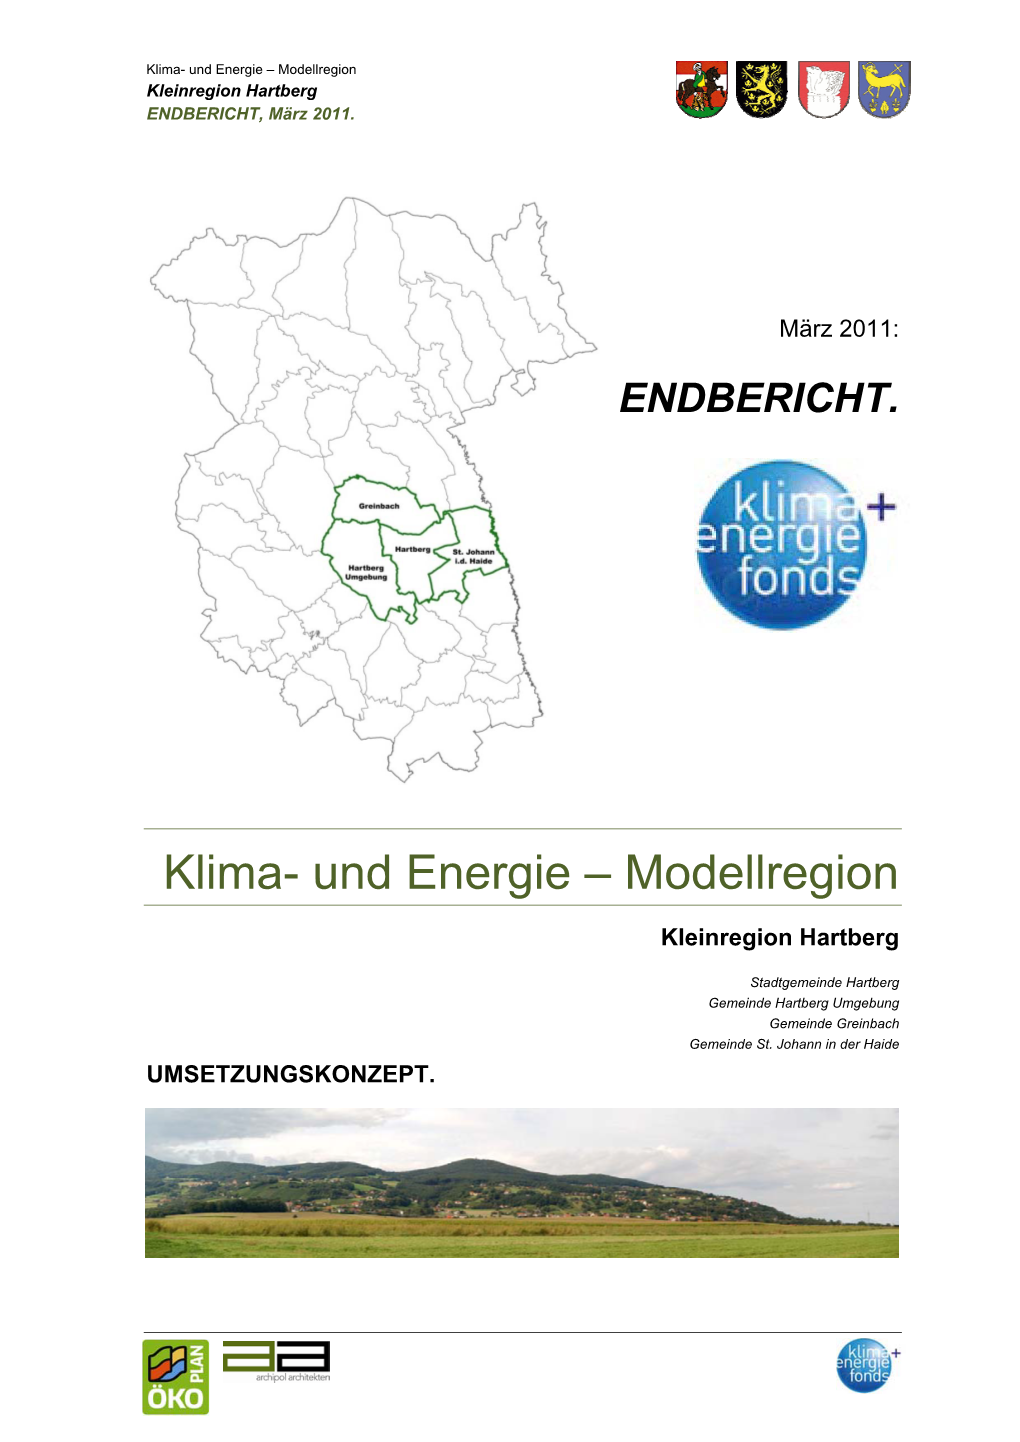 Und Energie – Modellregion Kleinregion Hartberg ENDBERICHT, März 2011